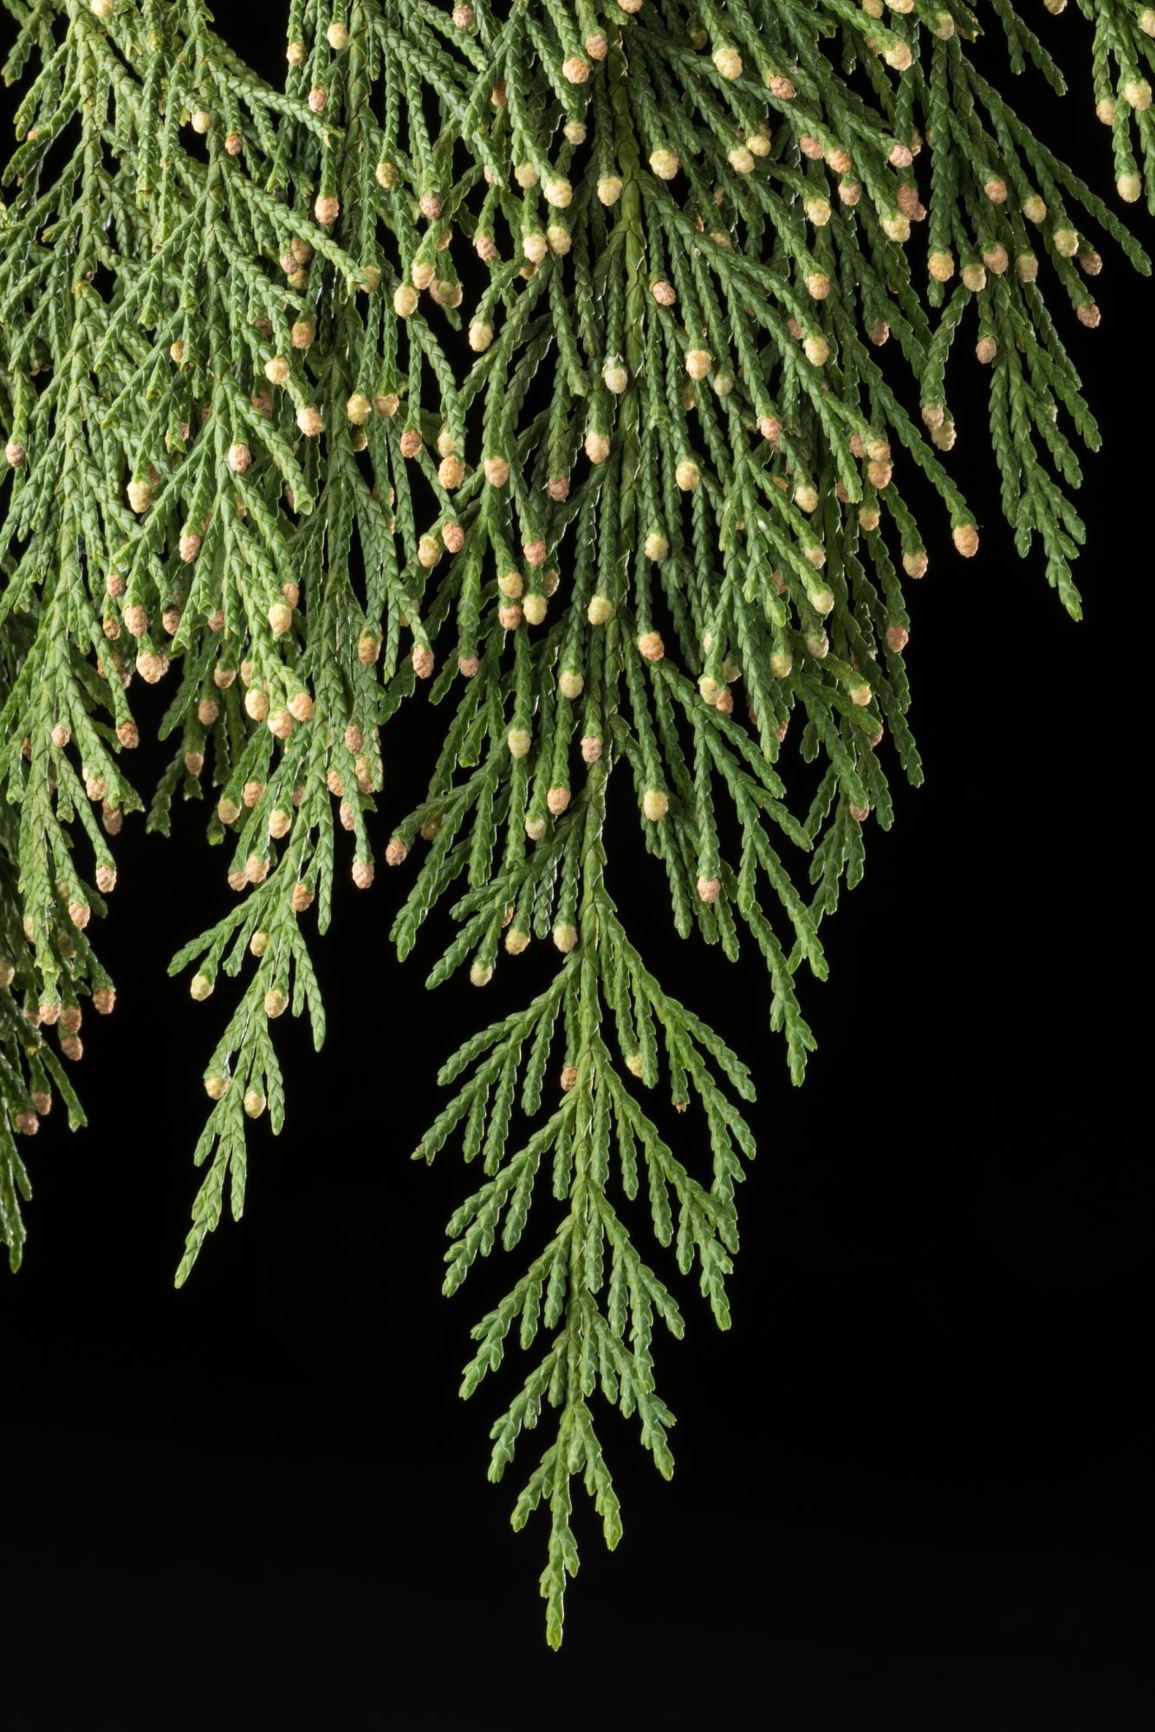 Callitropsis nootkatensis 'Pendula Glauca' - Weeping Alaskan Cedar, Weeping Nootka Cypress, Weeping Sitka Cypress, Weeping Yellow Cedar